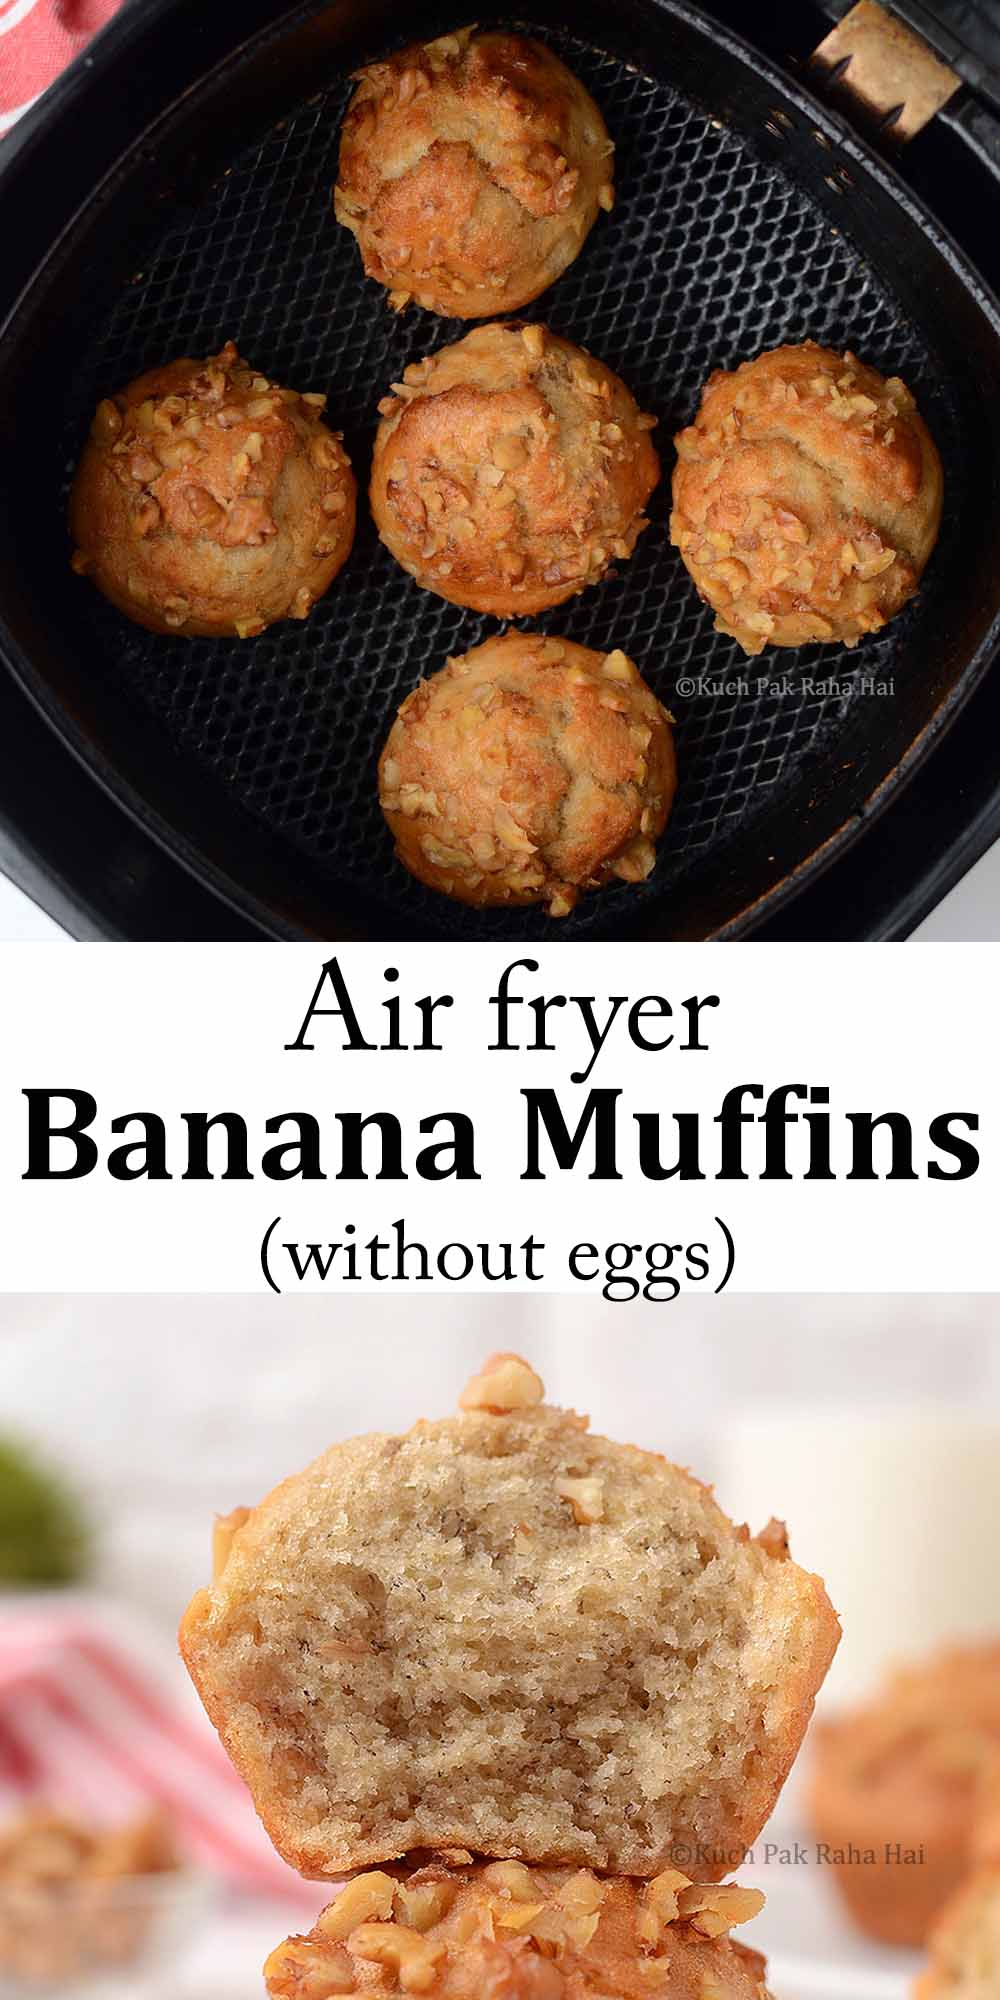 Air Fryer Banana Muffins